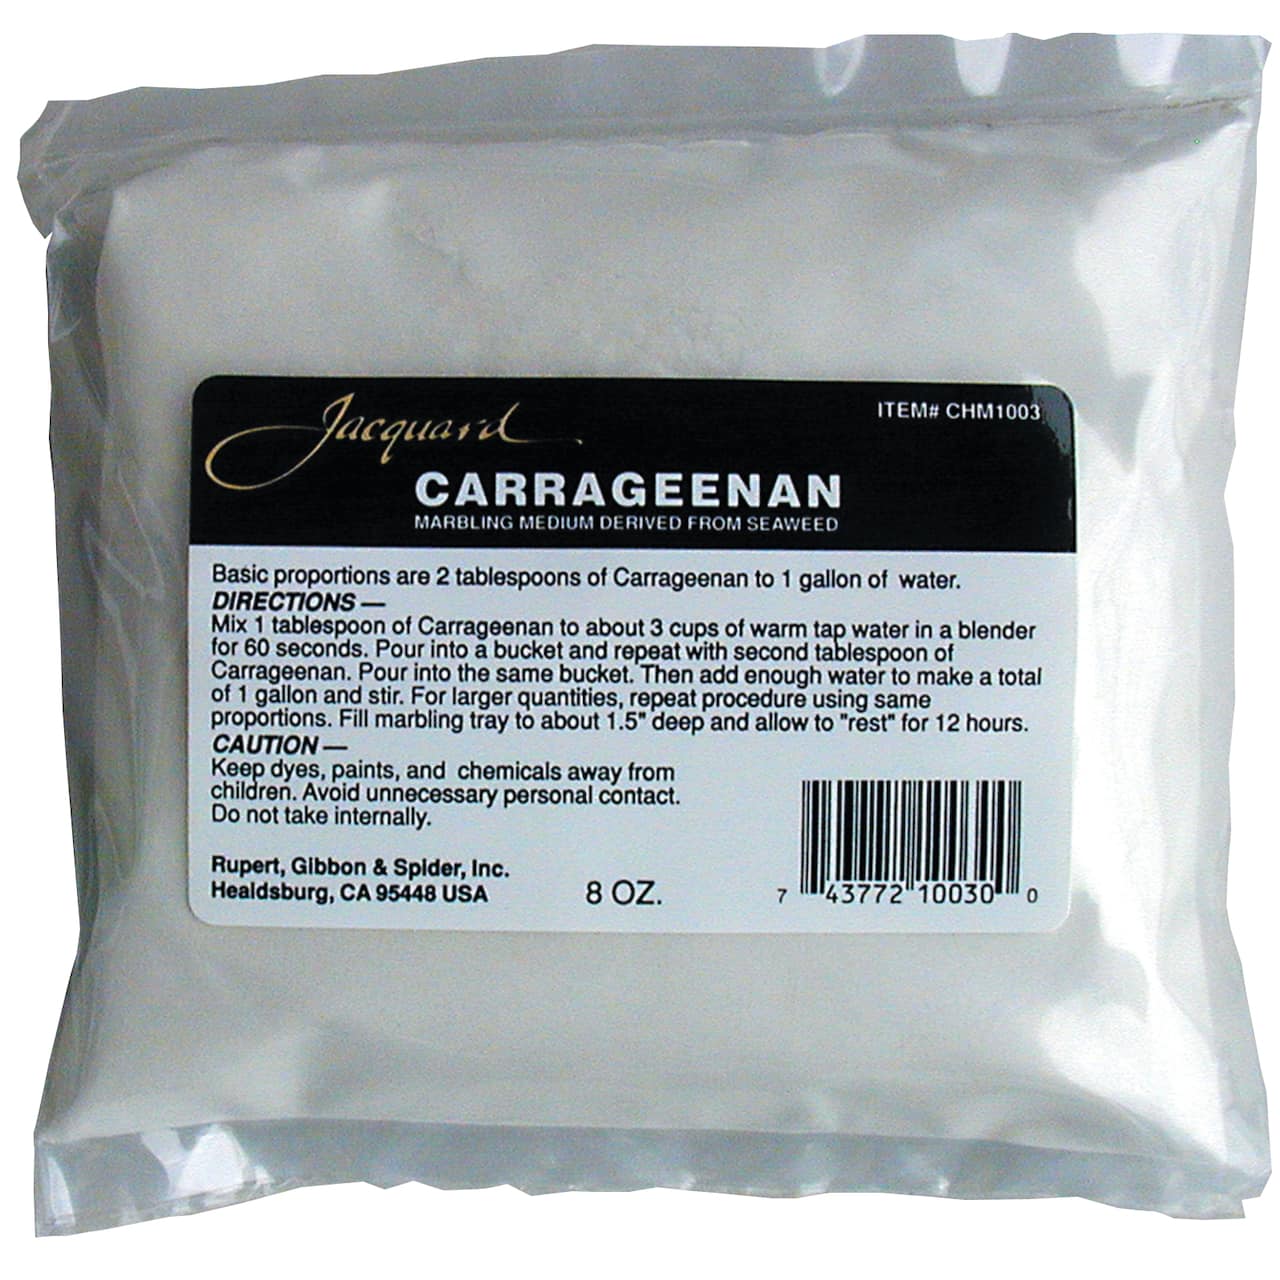 Jacquard Carageenan Marbling Agent